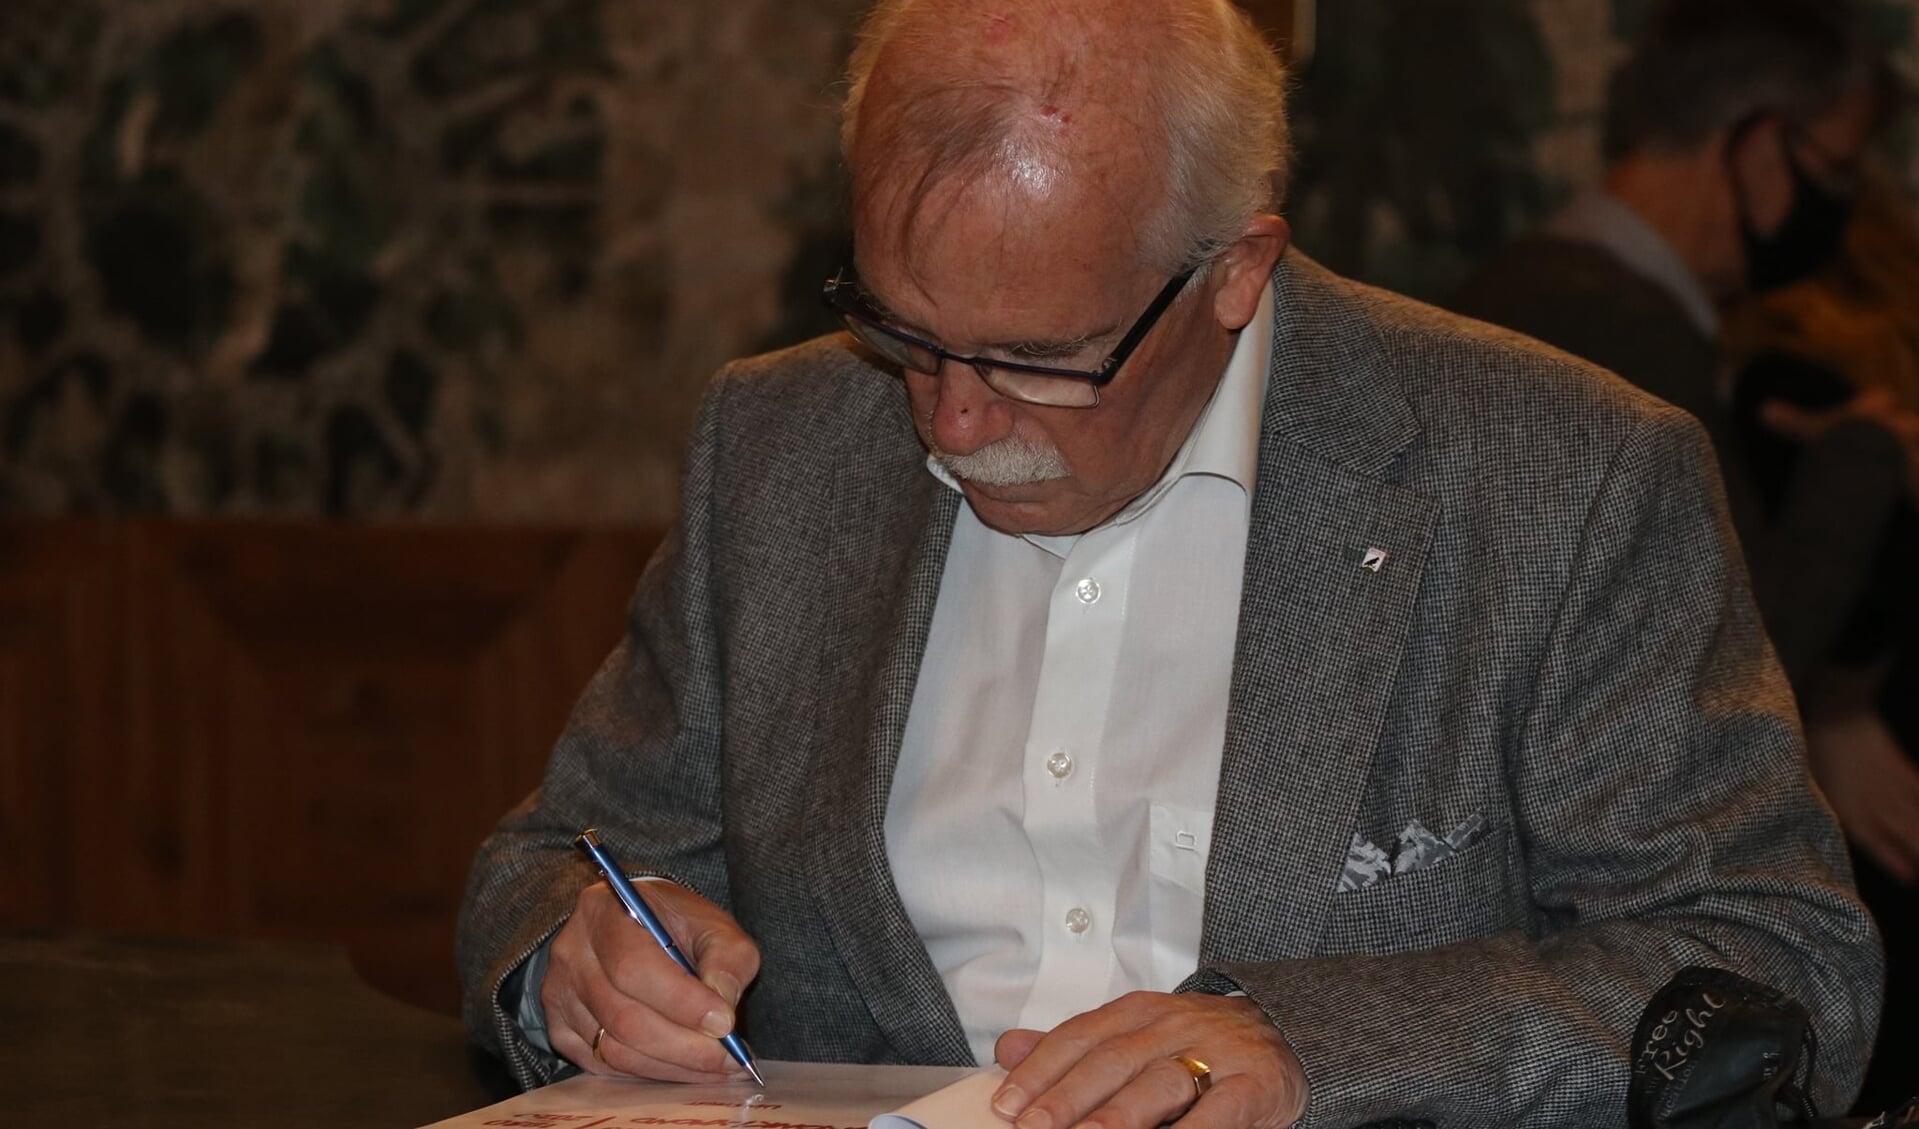 Auteur Wim Spruit zet zijn handtekening in het boek.